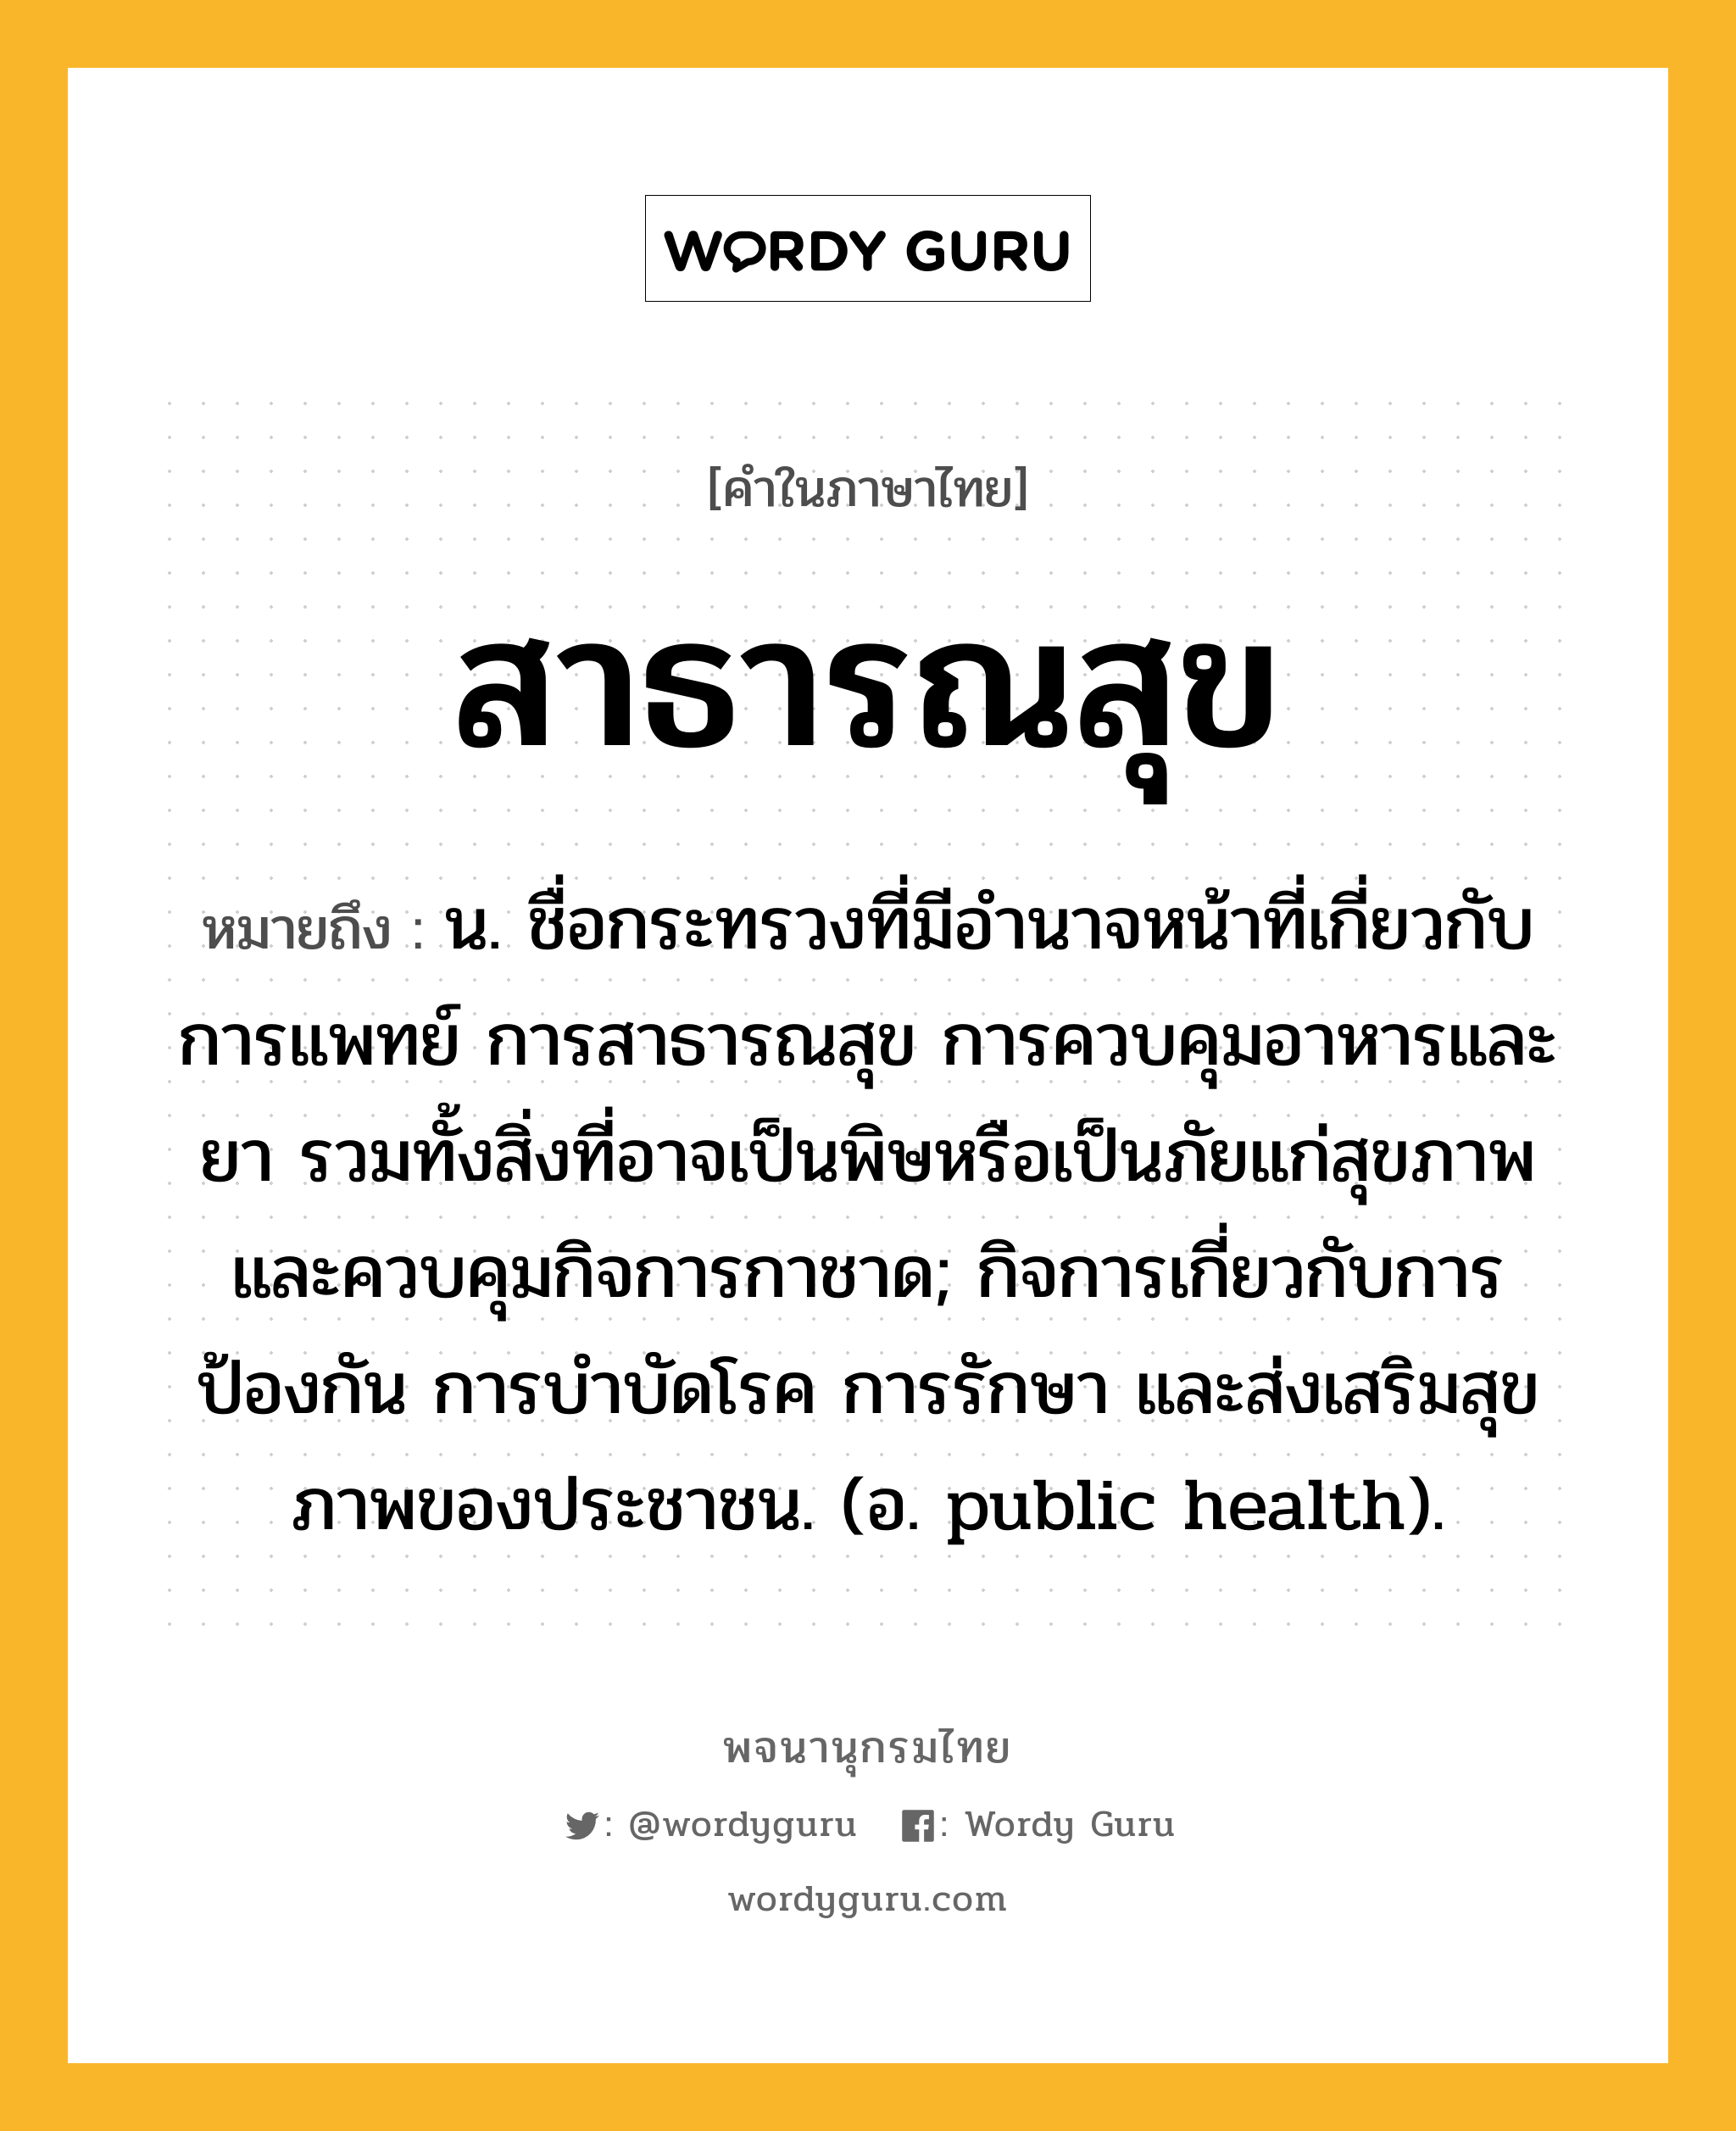 สาธารณสุข หมายถึงอะไร?, คำในภาษาไทย สาธารณสุข หมายถึง น. ชื่อกระทรวงที่มีอํานาจหน้าที่เกี่ยวกับการแพทย์ การสาธารณสุข การควบคุมอาหารและยา รวมทั้งสิ่งที่อาจเป็นพิษหรือเป็นภัยแก่สุขภาพ และควบคุมกิจการกาชาด; กิจการเกี่ยวกับการป้องกัน การบําบัดโรค การรักษา และส่งเสริมสุขภาพของประชาชน. (อ. public health).